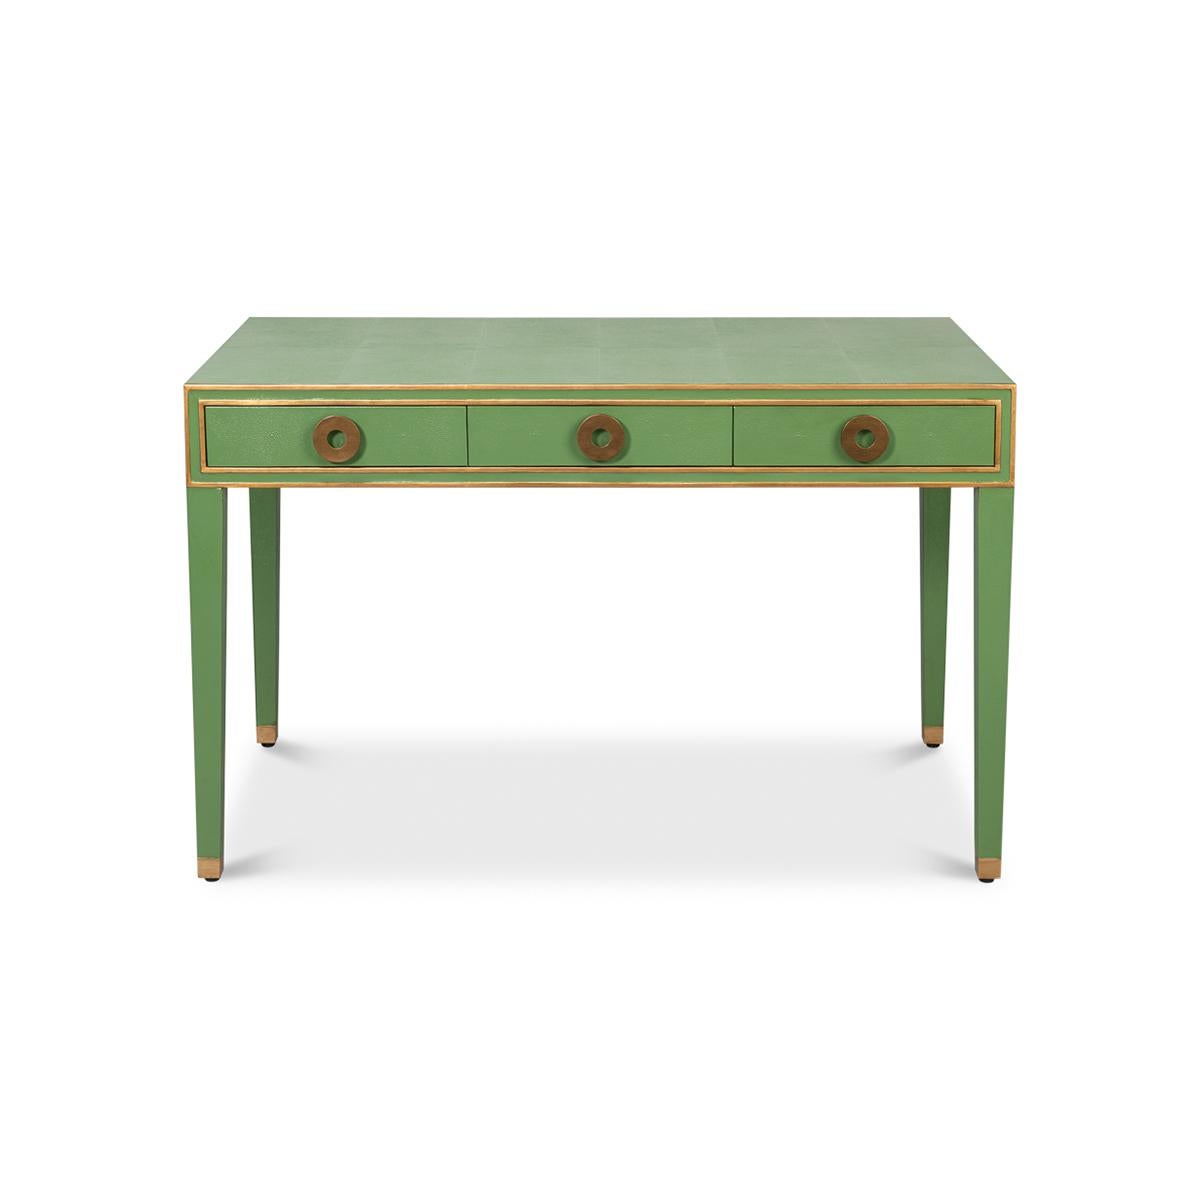 Ein französischer Art-Déco-Schreibtisch aus Leder mit Chagrin-Prägung in einem hellen Grün. Mit vergoldeten Akzenten, drei Fries-Schubladen mit modernen runden Griffen und auf quadratischen, konischen Beinen.

Abmessungen: 48